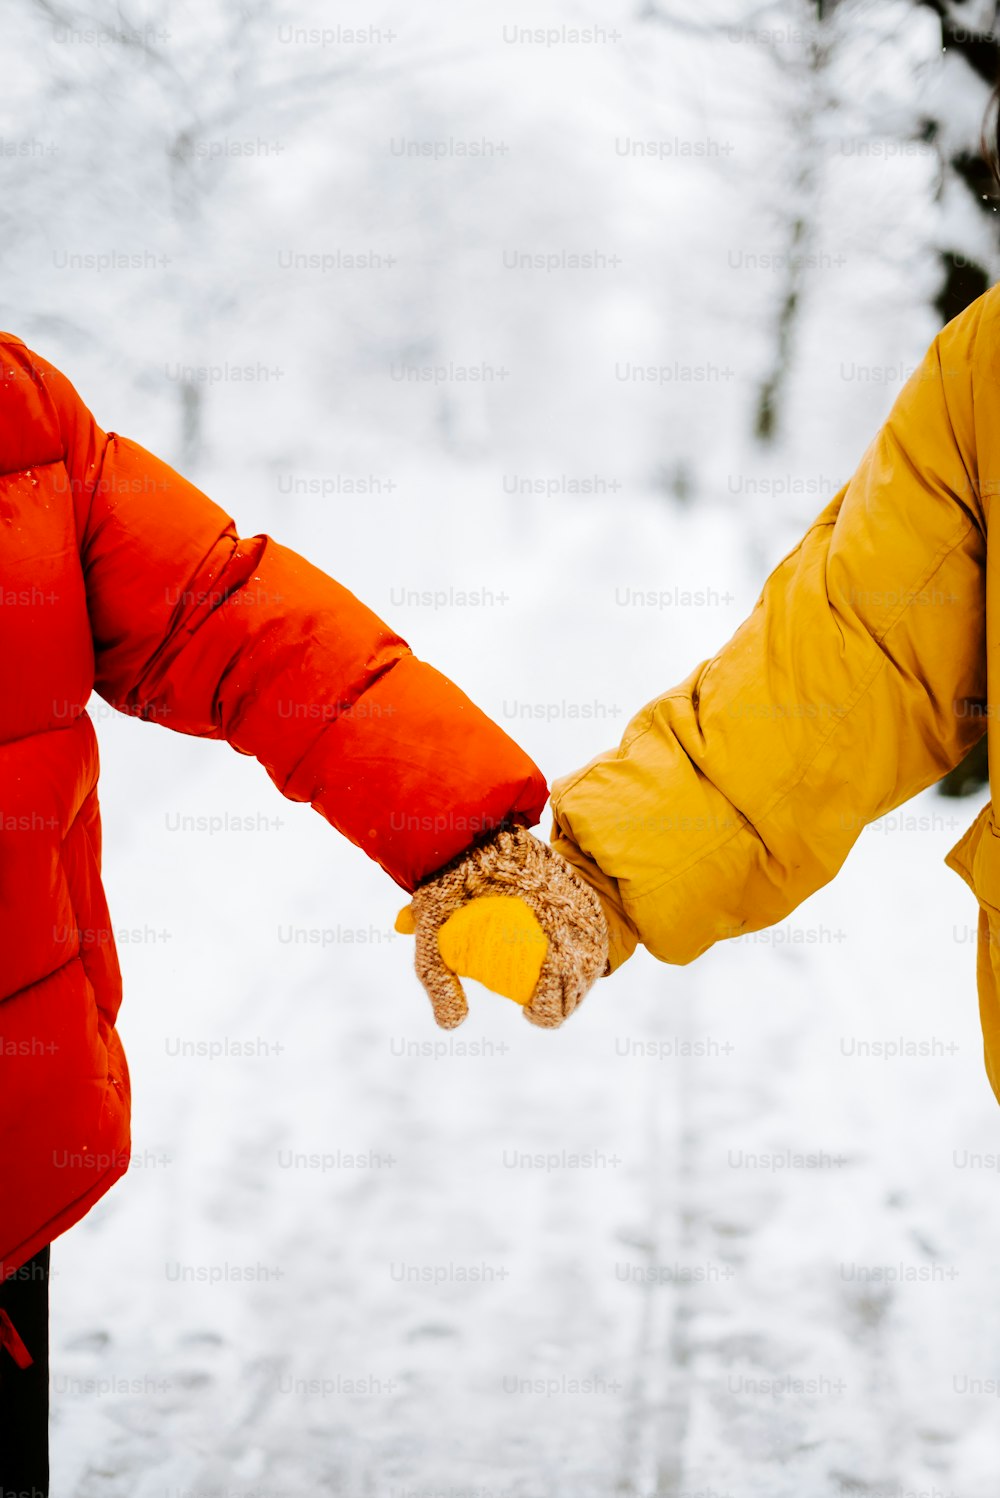 Dos personas tomadas de la mano en la nieve